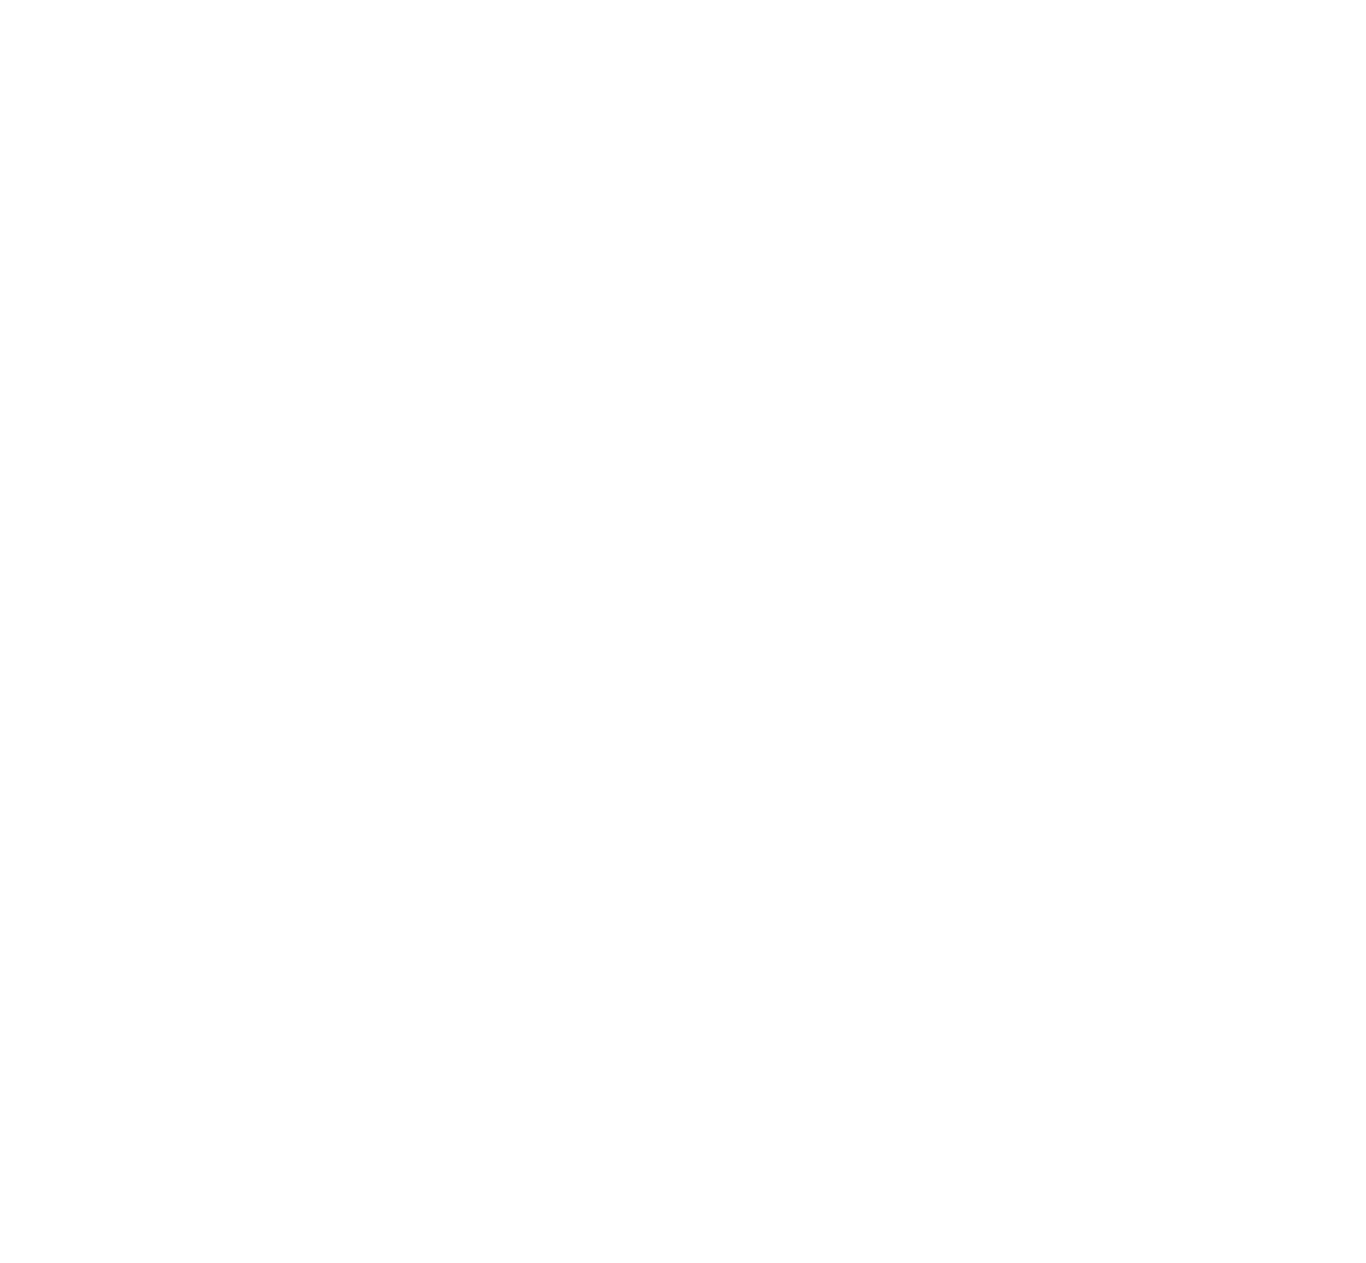 sennheiser logo large wht